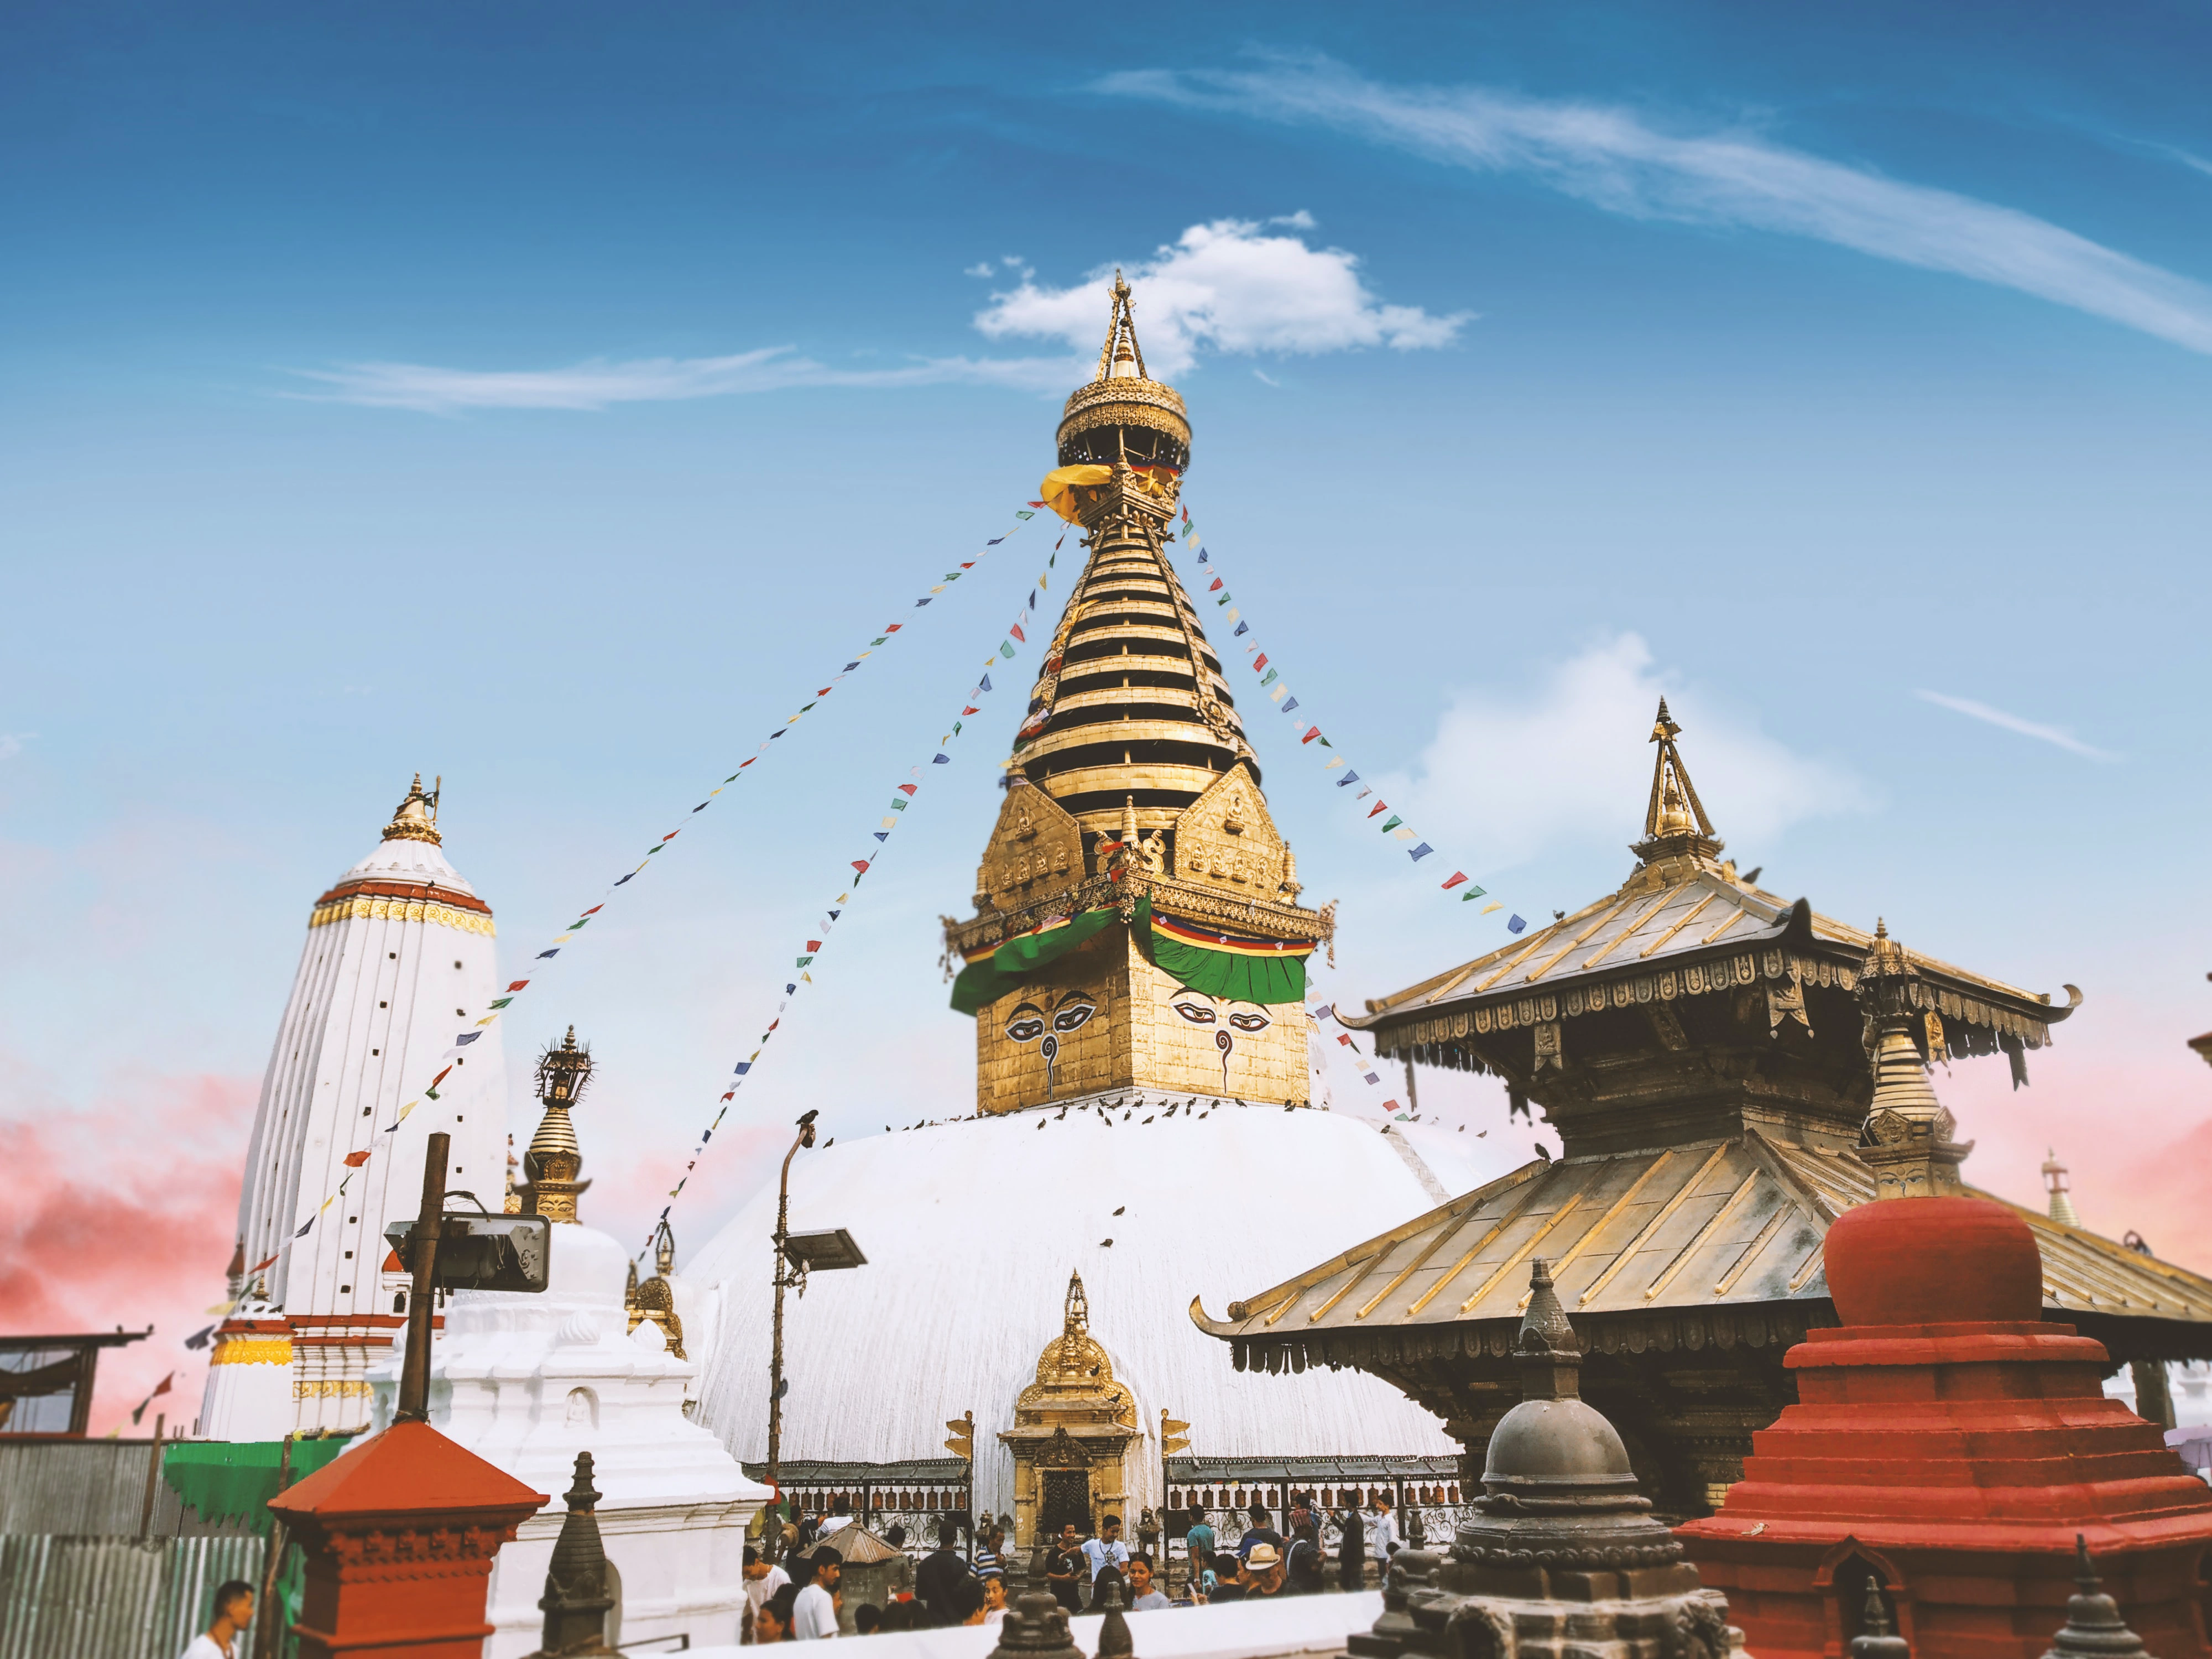 Swayambhunath Stupa (Monkey Temple) in Nepal